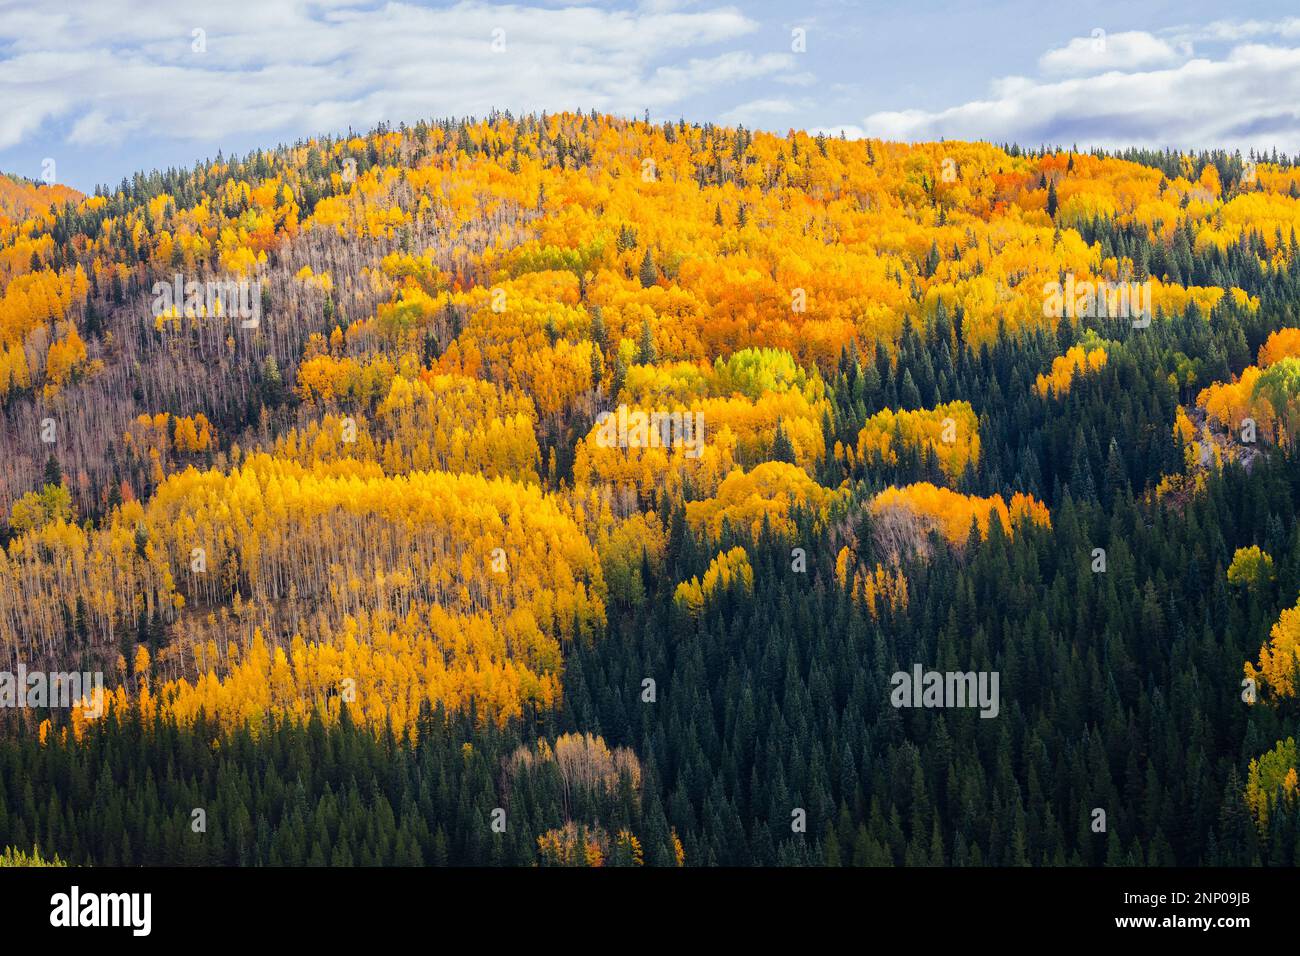 Paysage d'automne avec forêt à flanc de colline, Durango, Colorado, Etats-Unis Banque D'Images